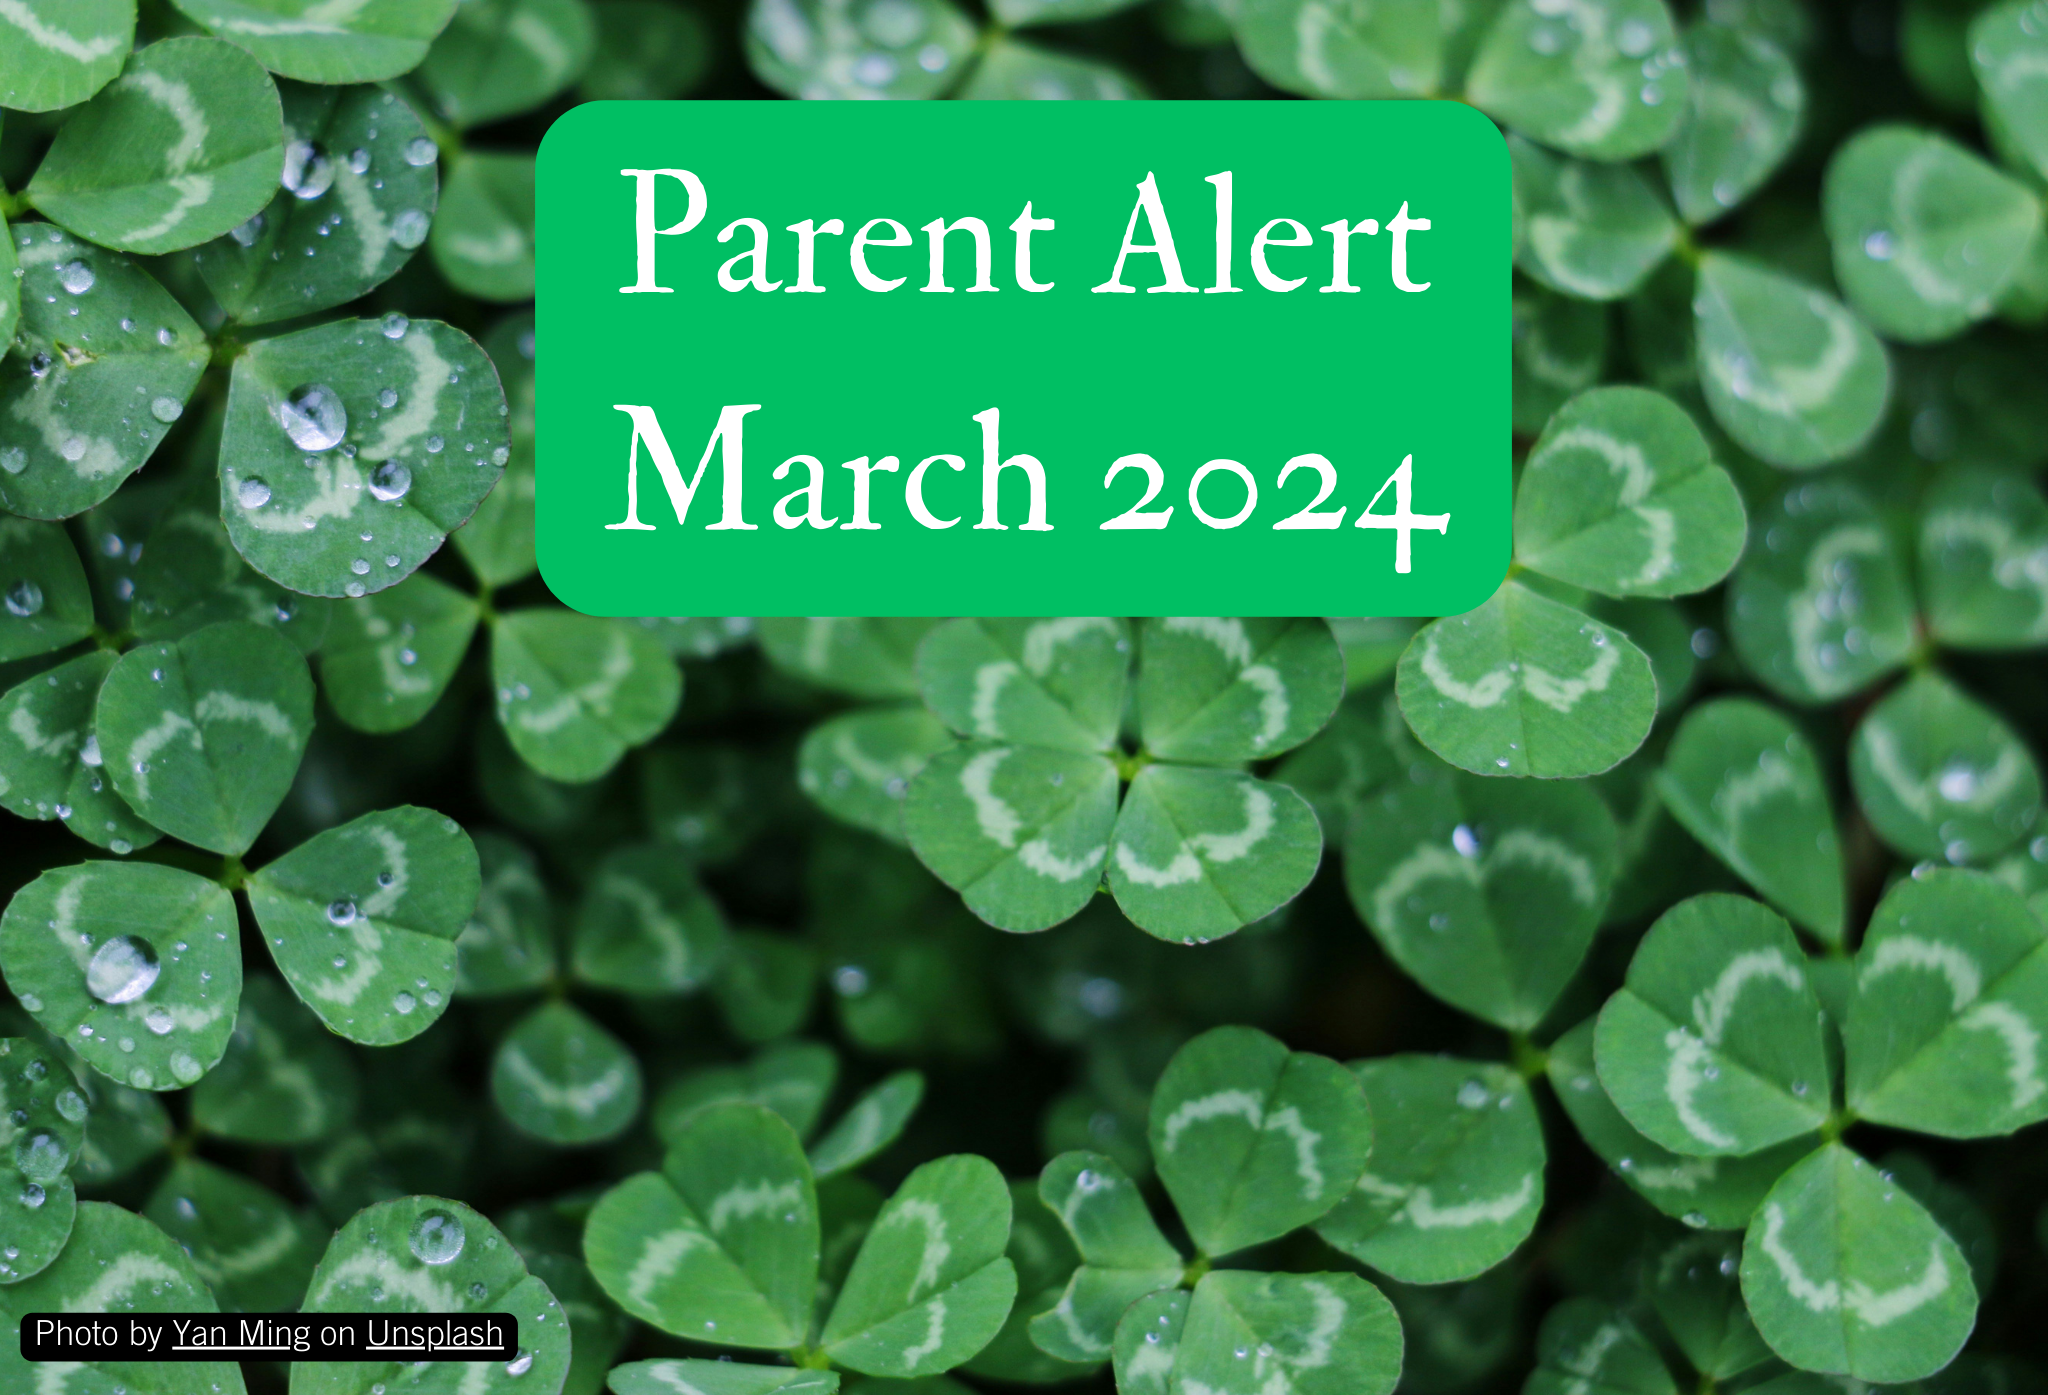 Parent Alert December 2023 Background Image (12)